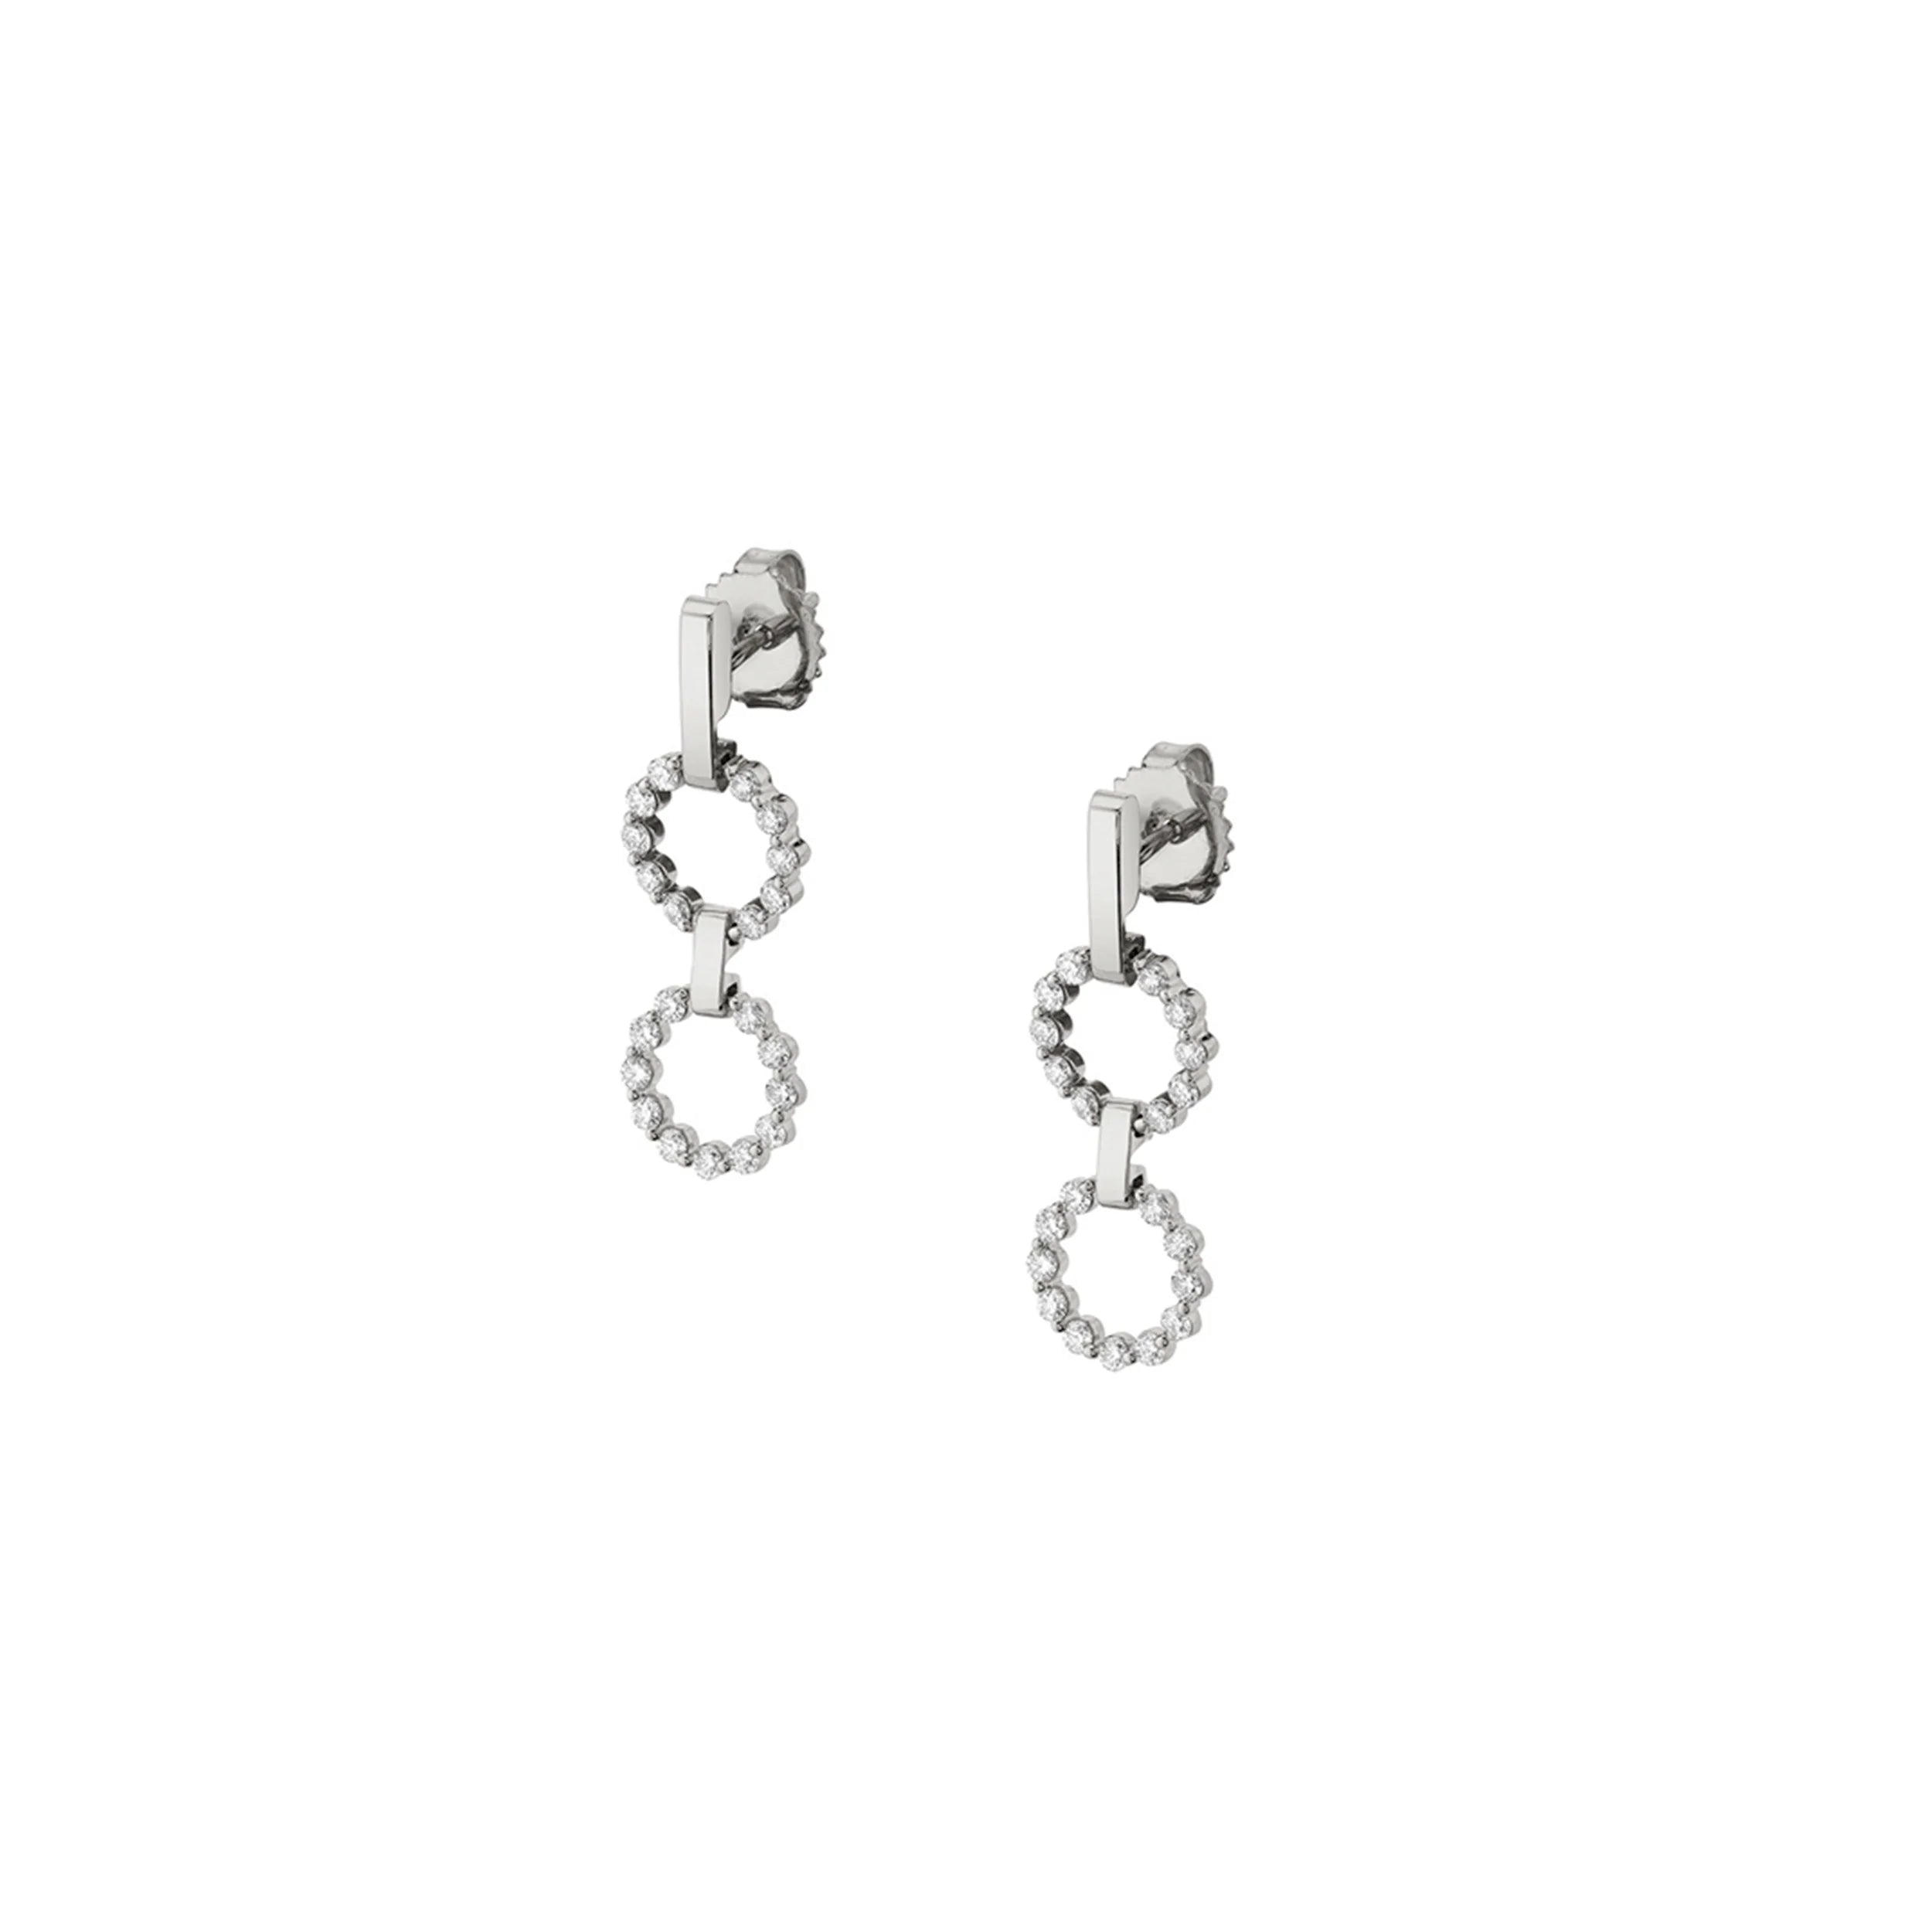 MICHAEL M Earrings 14K White Gold Two Ring Cloud Drop Earrings ER385-S